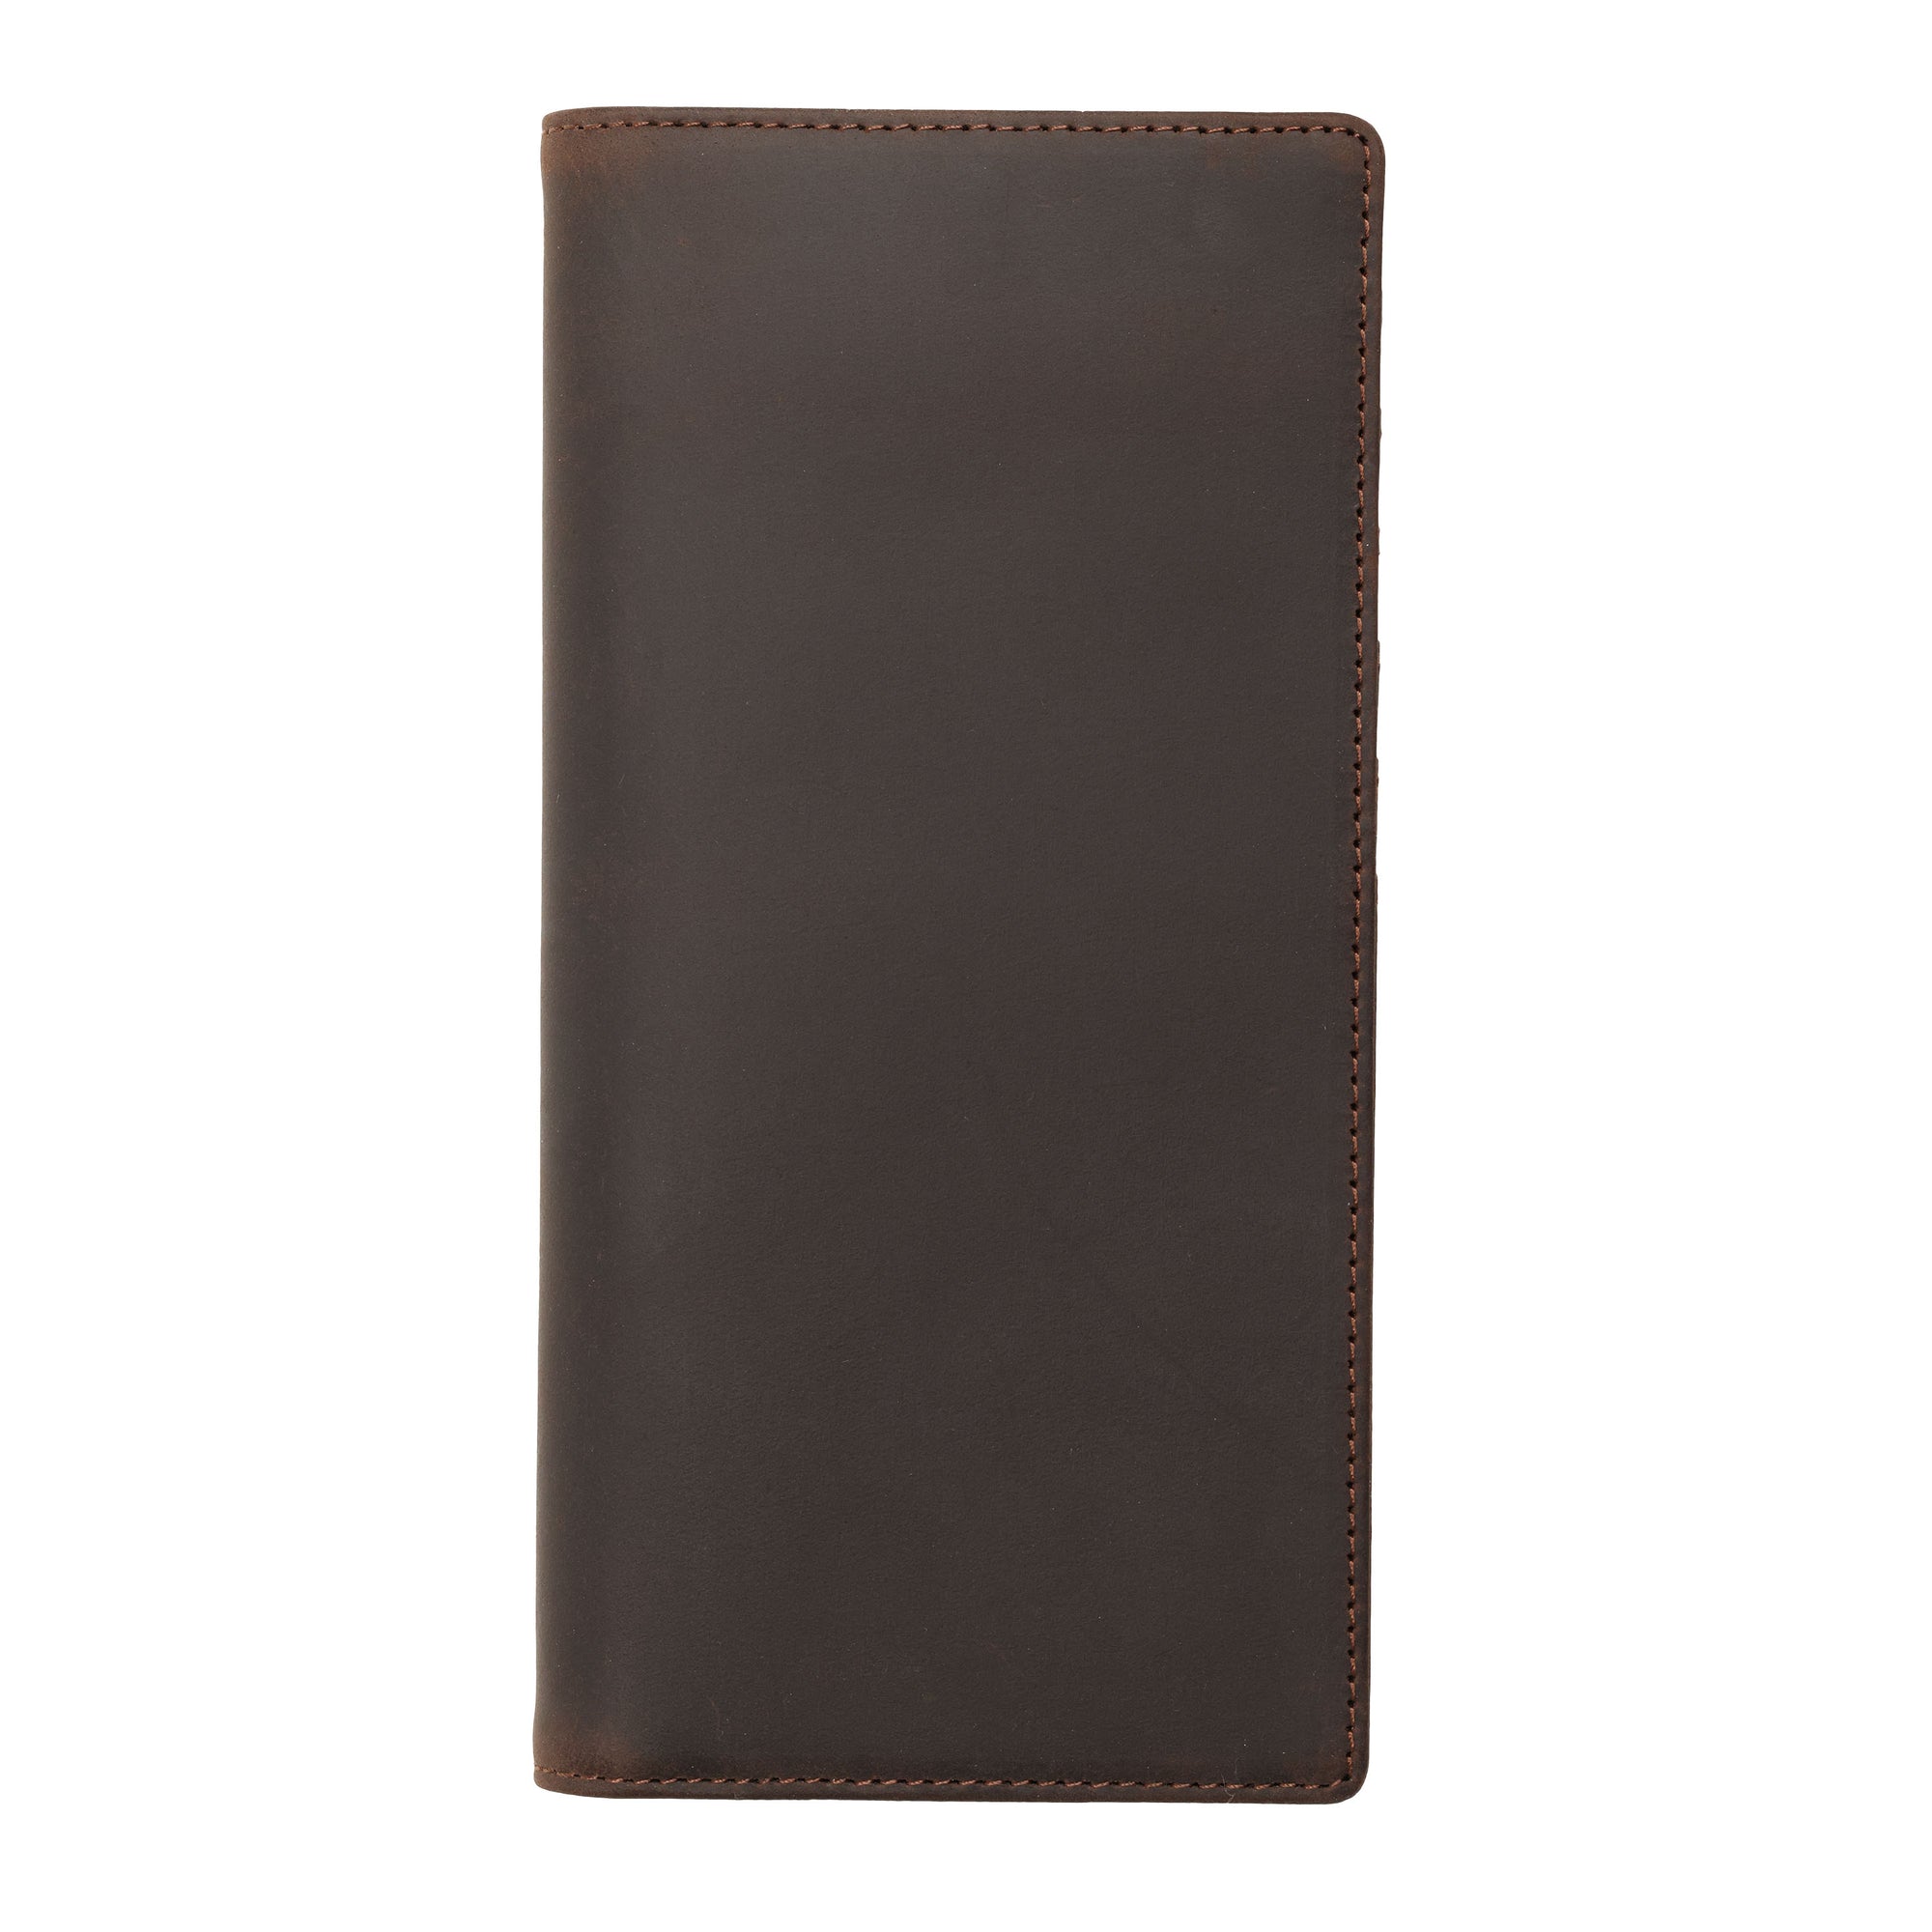 Genuine Leather Long Wallet - Dark Brown Crazy Horse - Ox & Birch